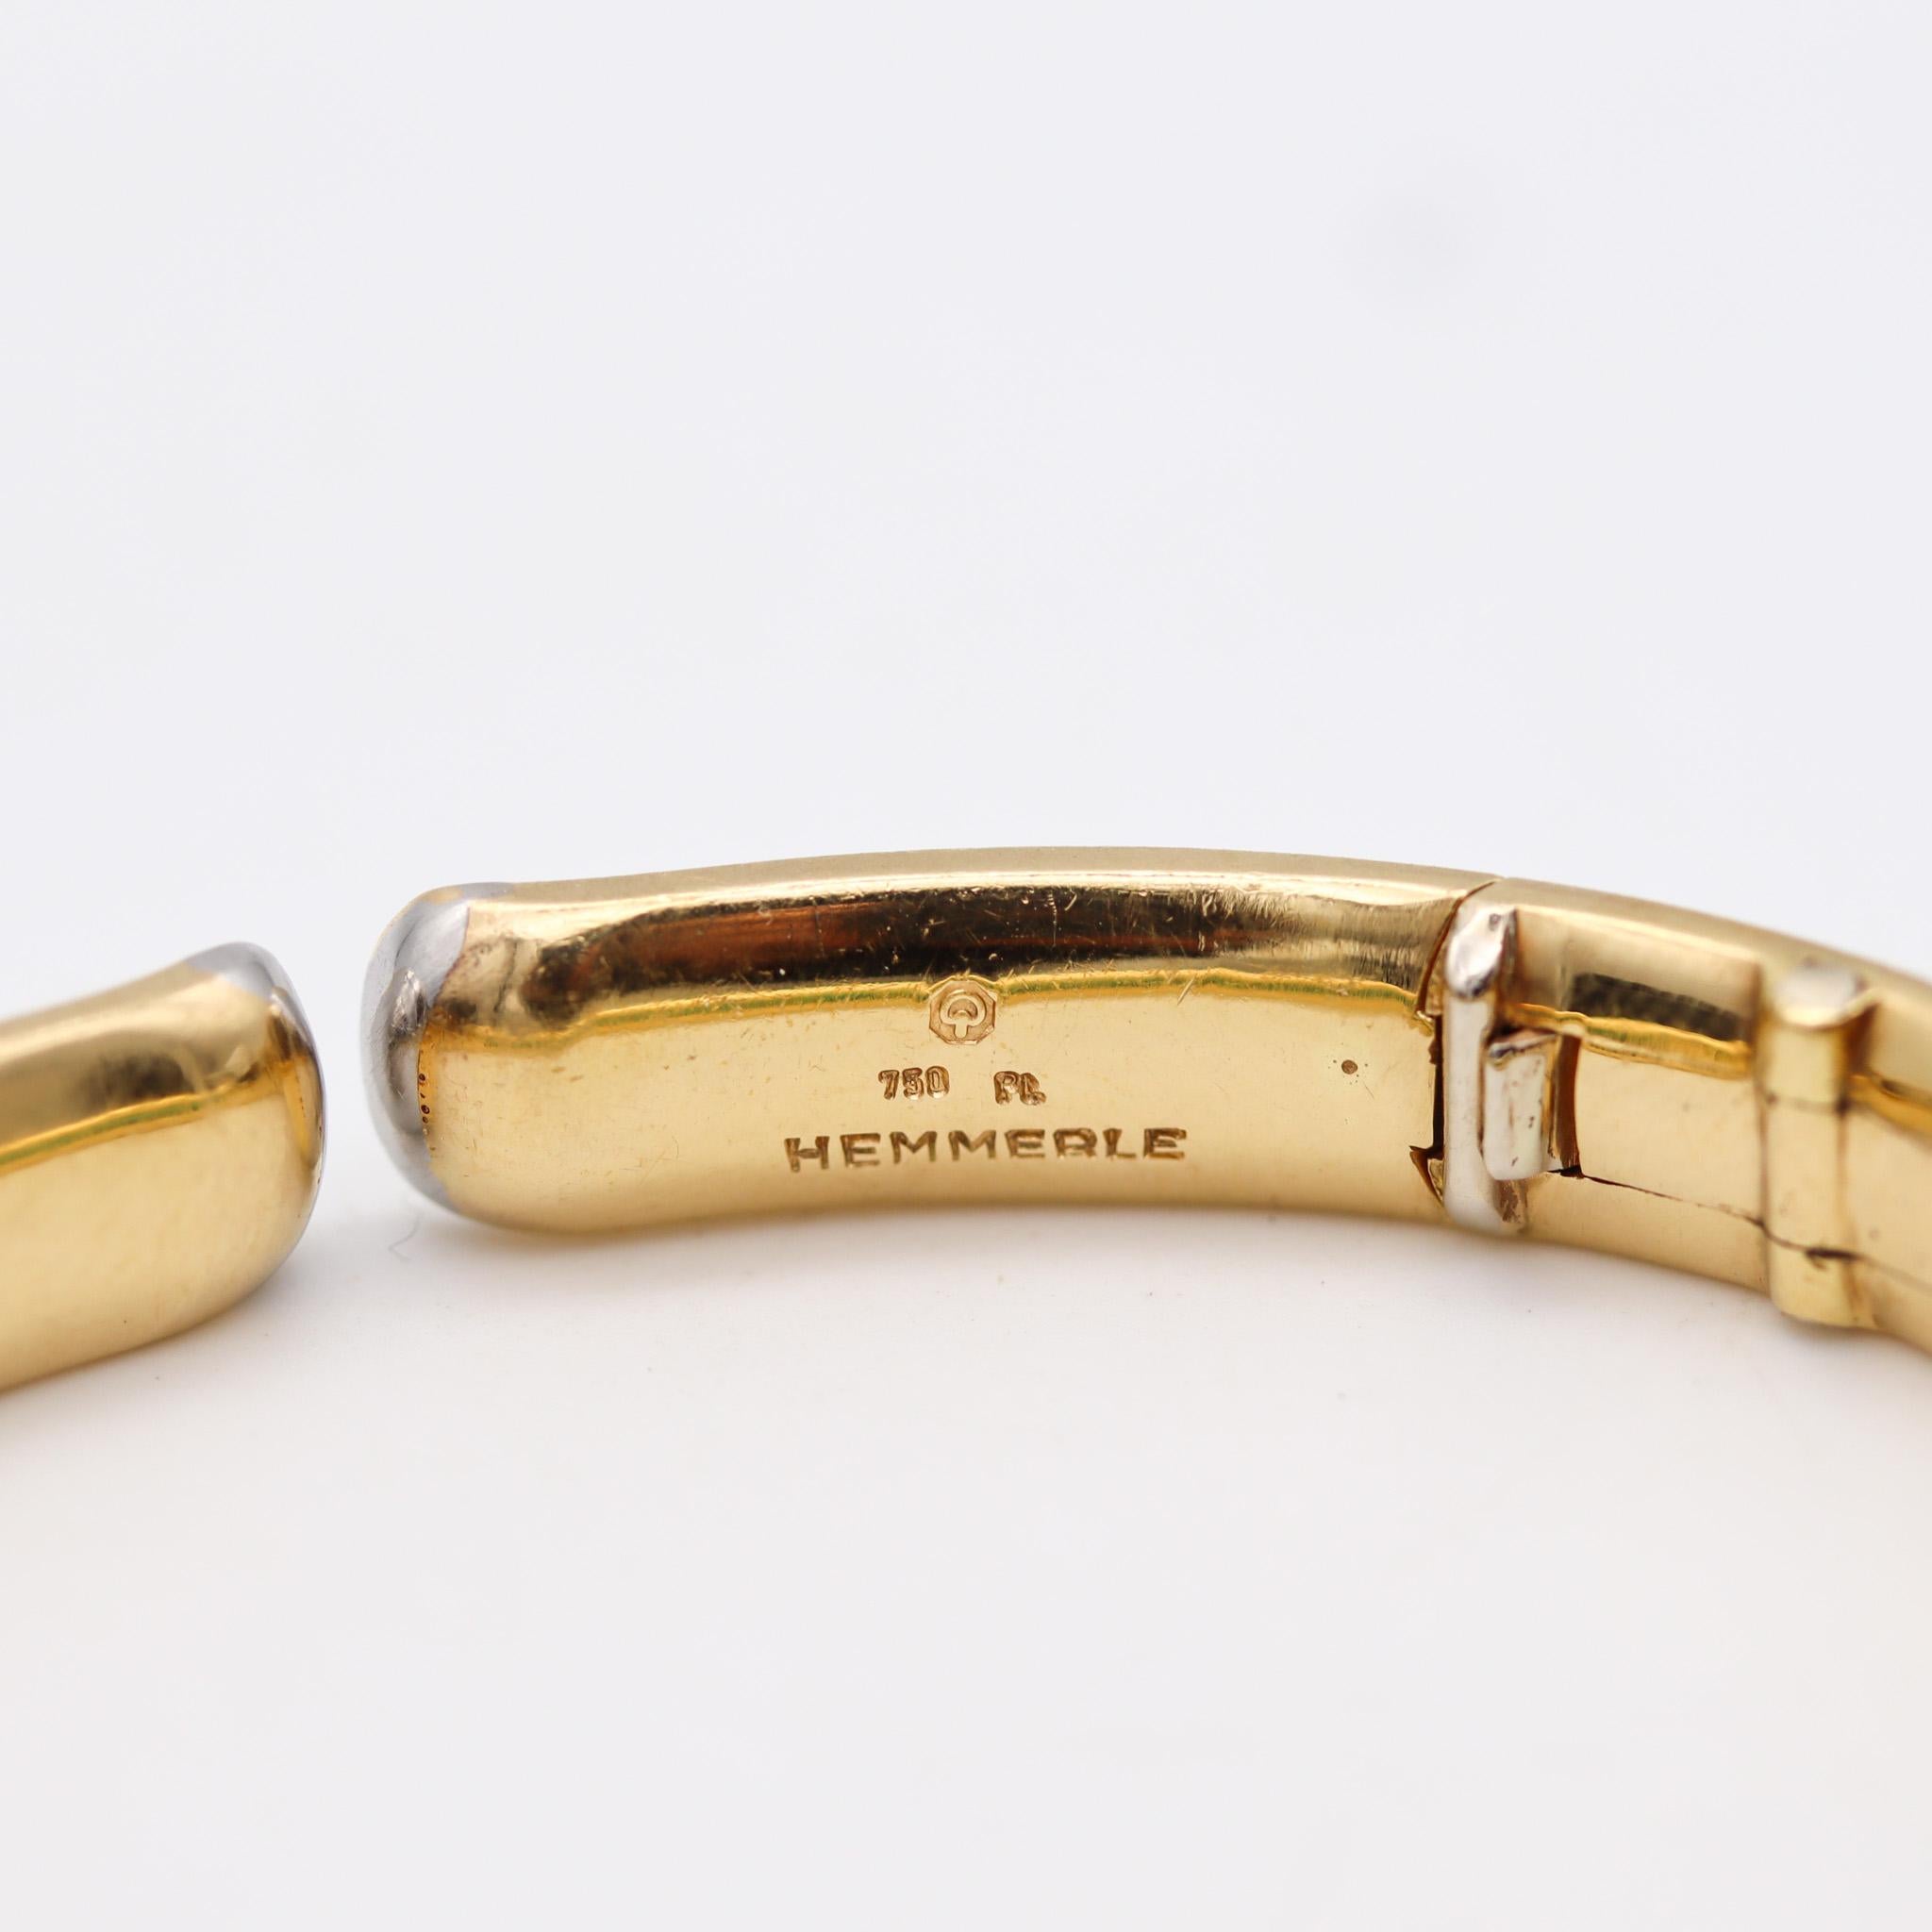 Un bracelet avec des émeraudes conçu par Hemmerle.

Un bracelet exceptionnel, créé à Munich par la maison de joaillerie allemande Hemmerle. Ce magnifique bijou très chic a été réalisé en or jaune massif de 18 carats avec des détails en platine